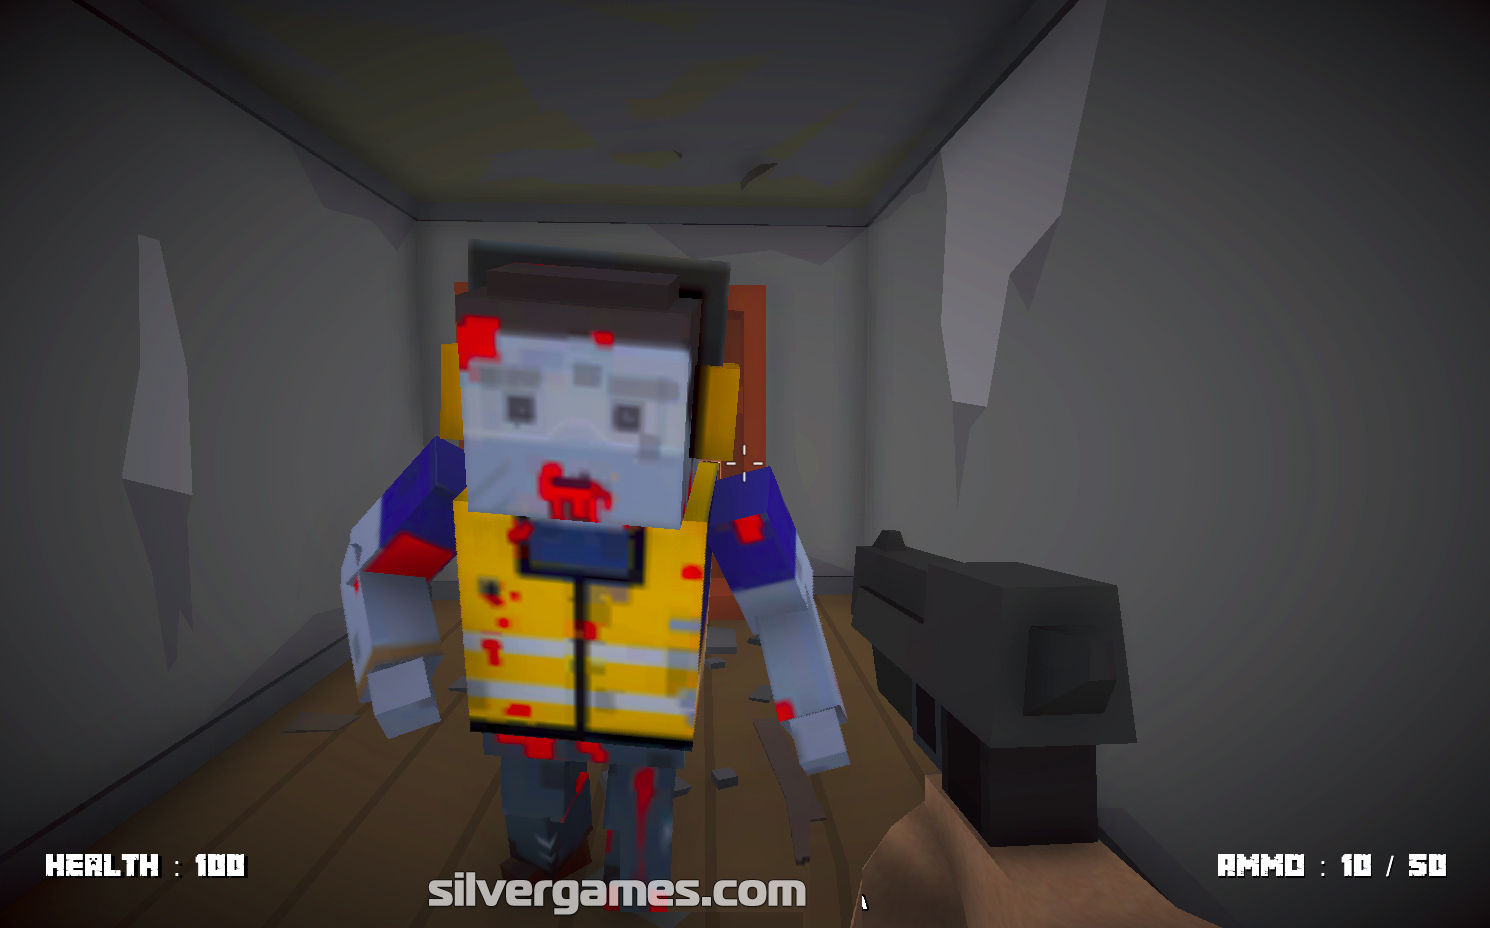 Jogo Mineworld Horror no Jogos 360